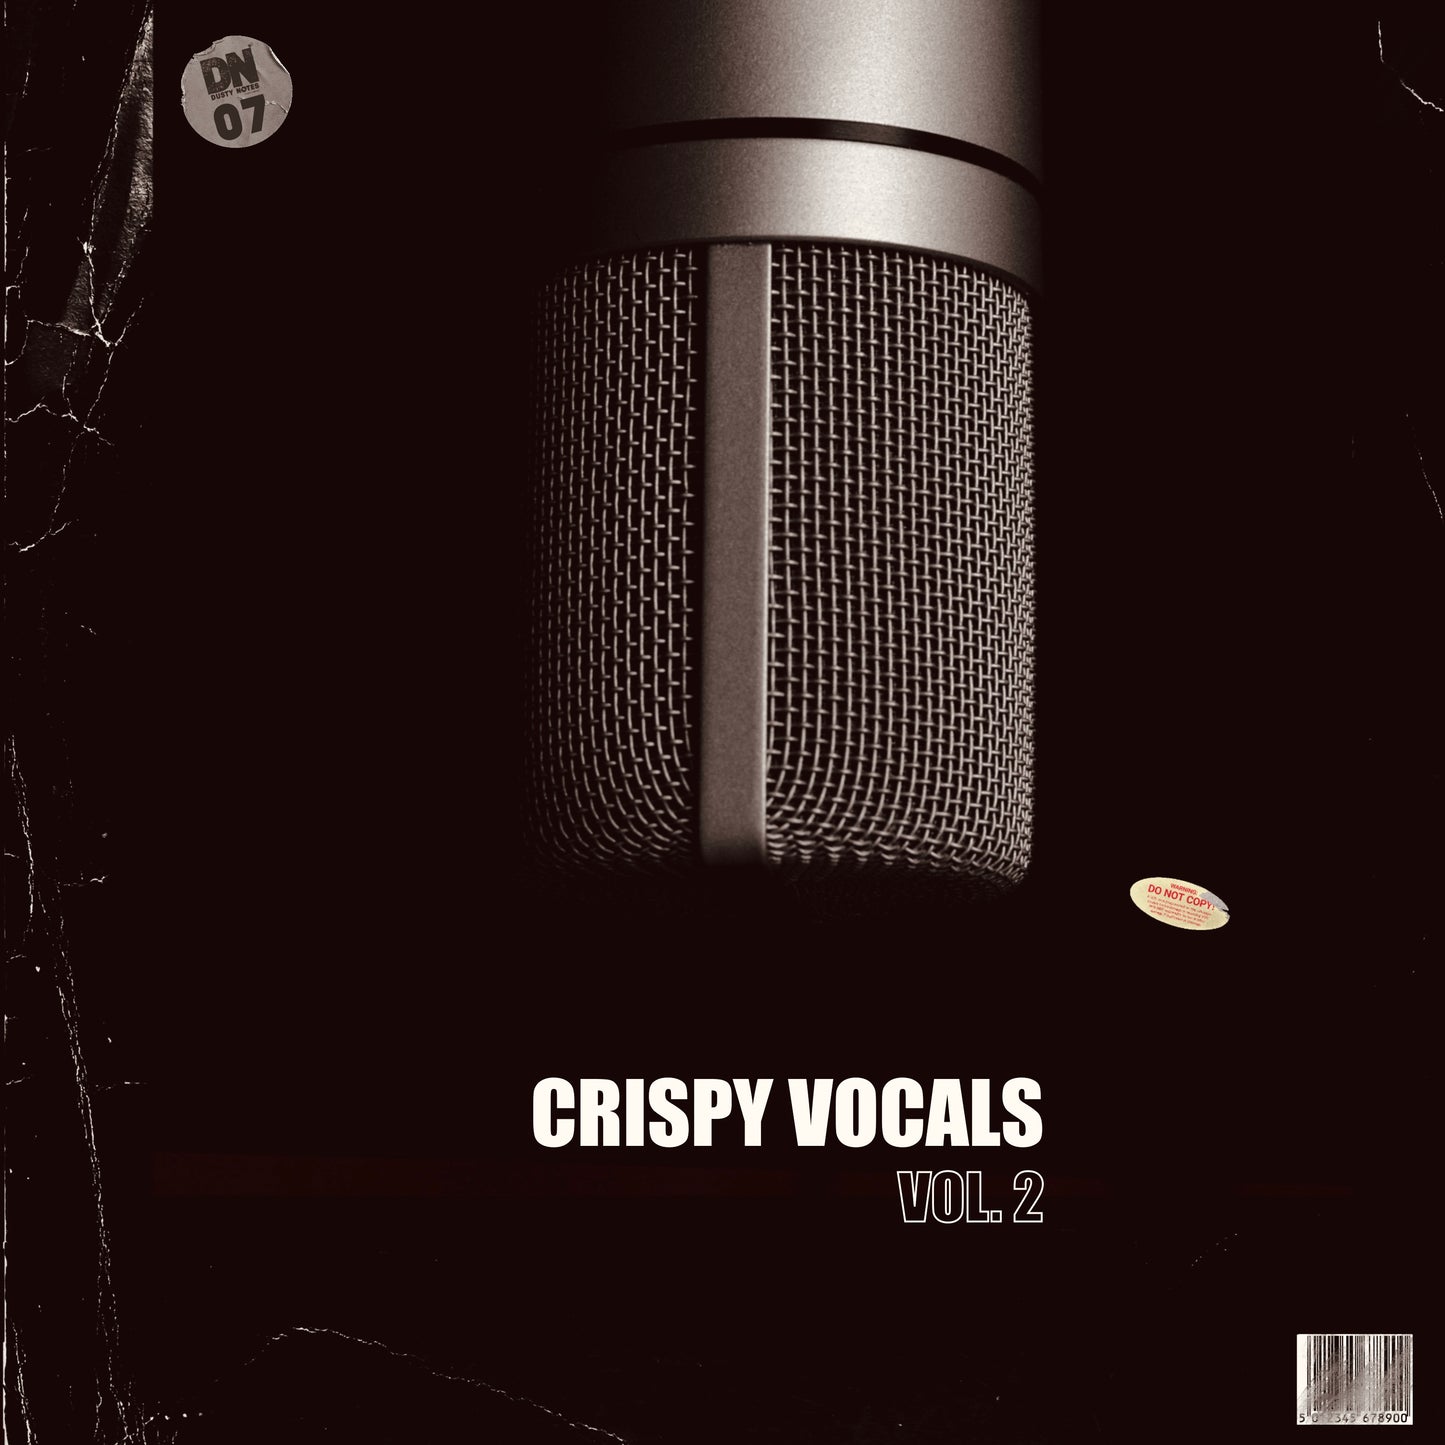 CRISPY VOCALS VOL.2